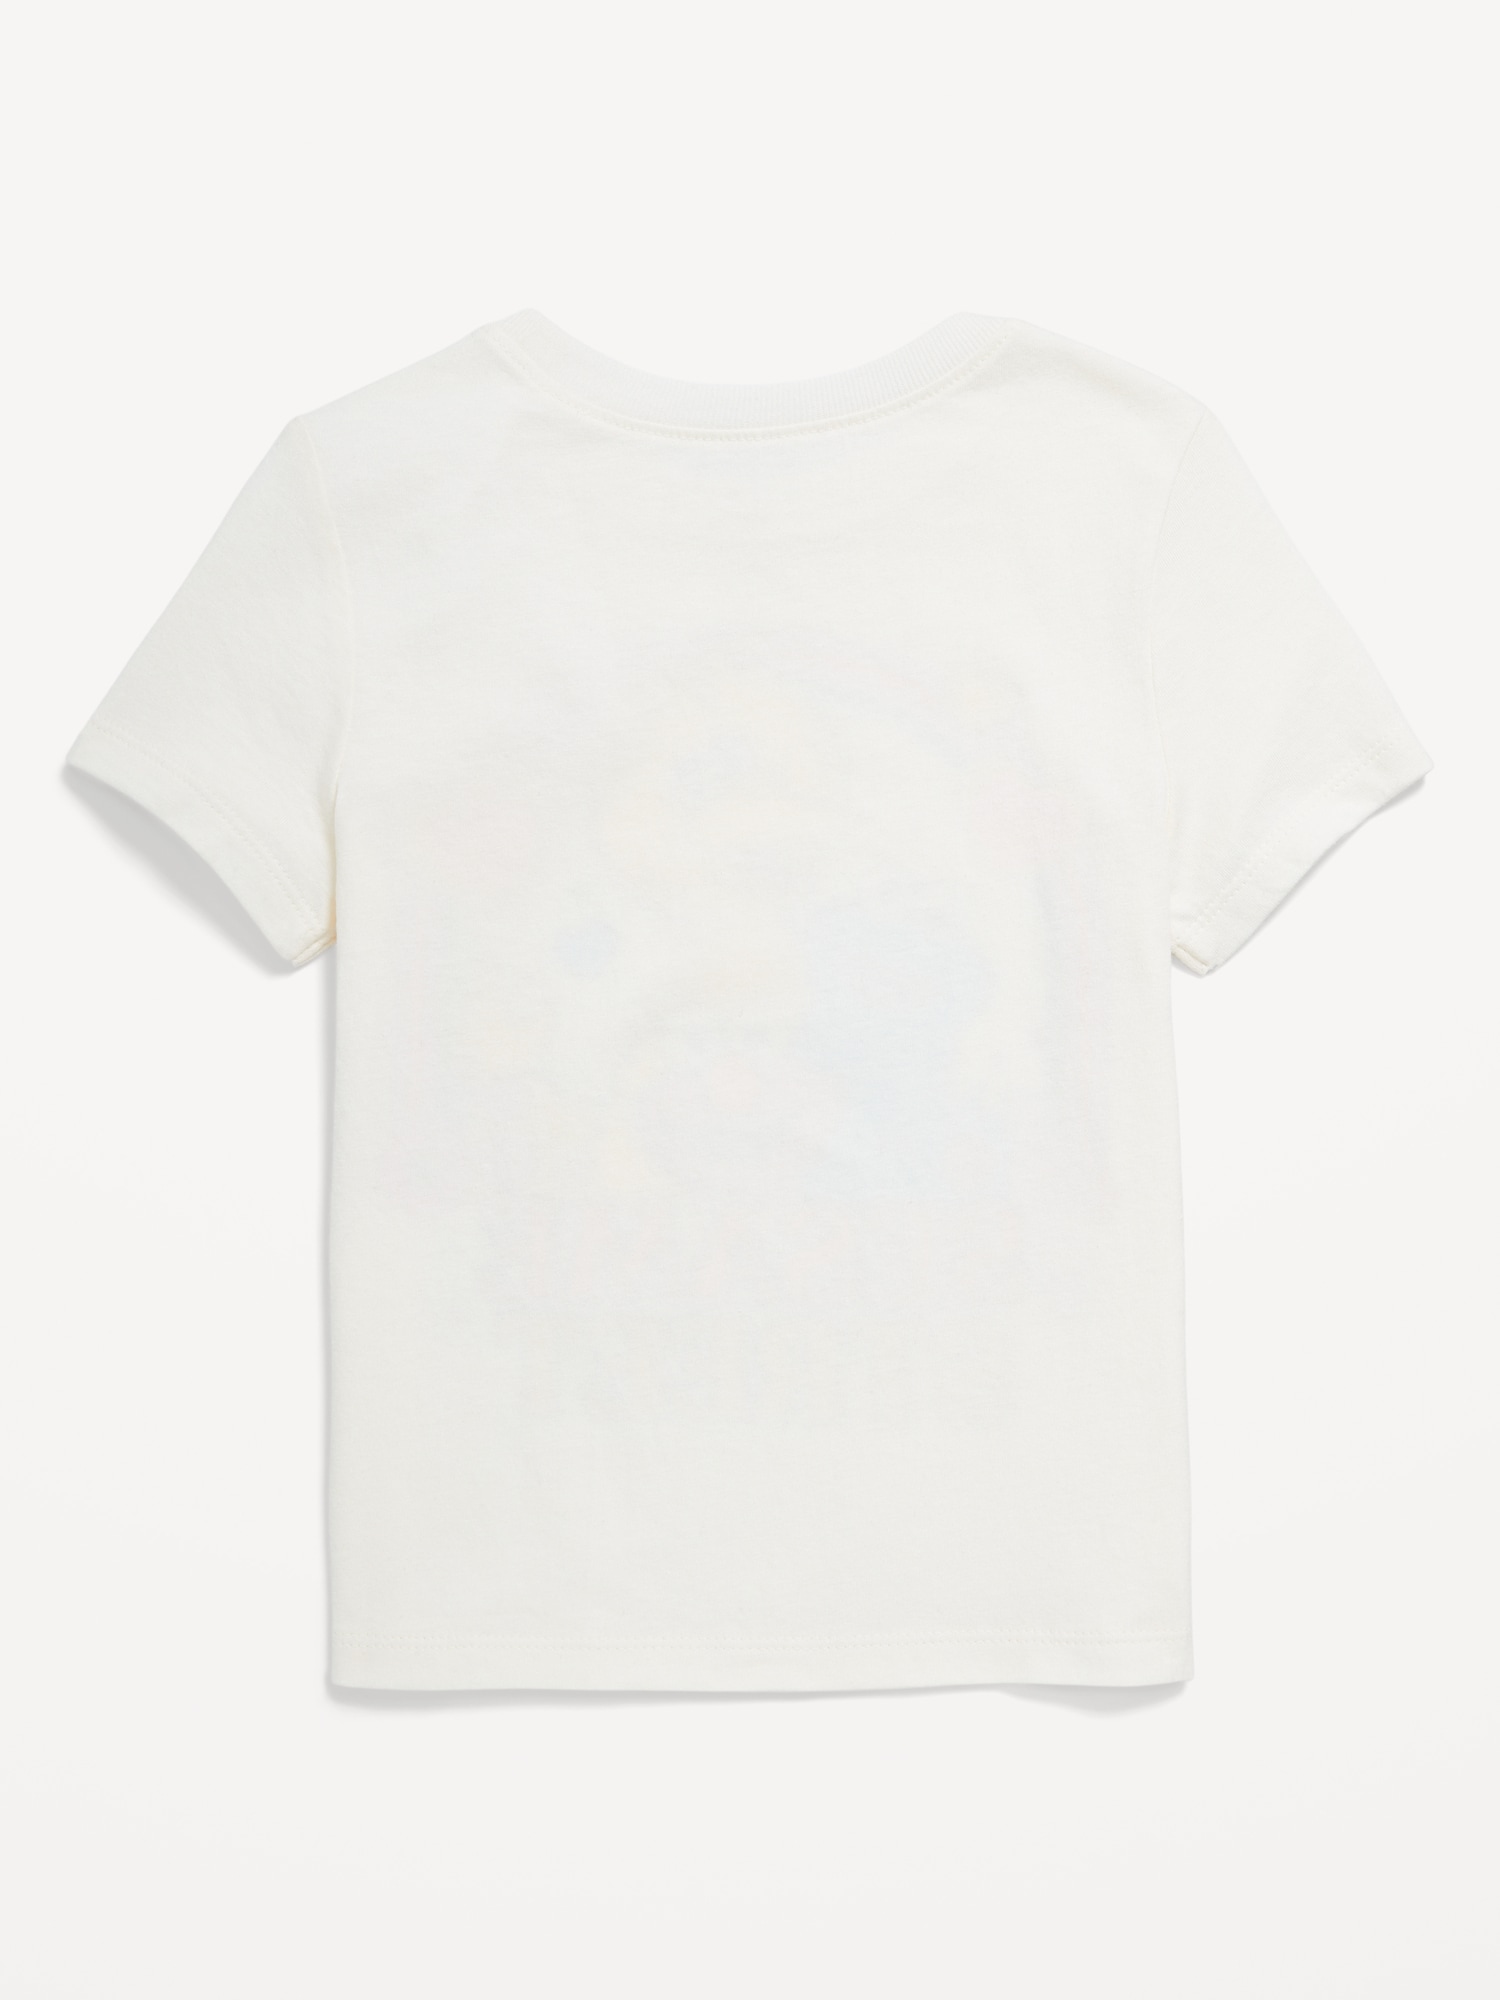 Sesame Street™ Unisex Graphic T-Shirt for Toddler